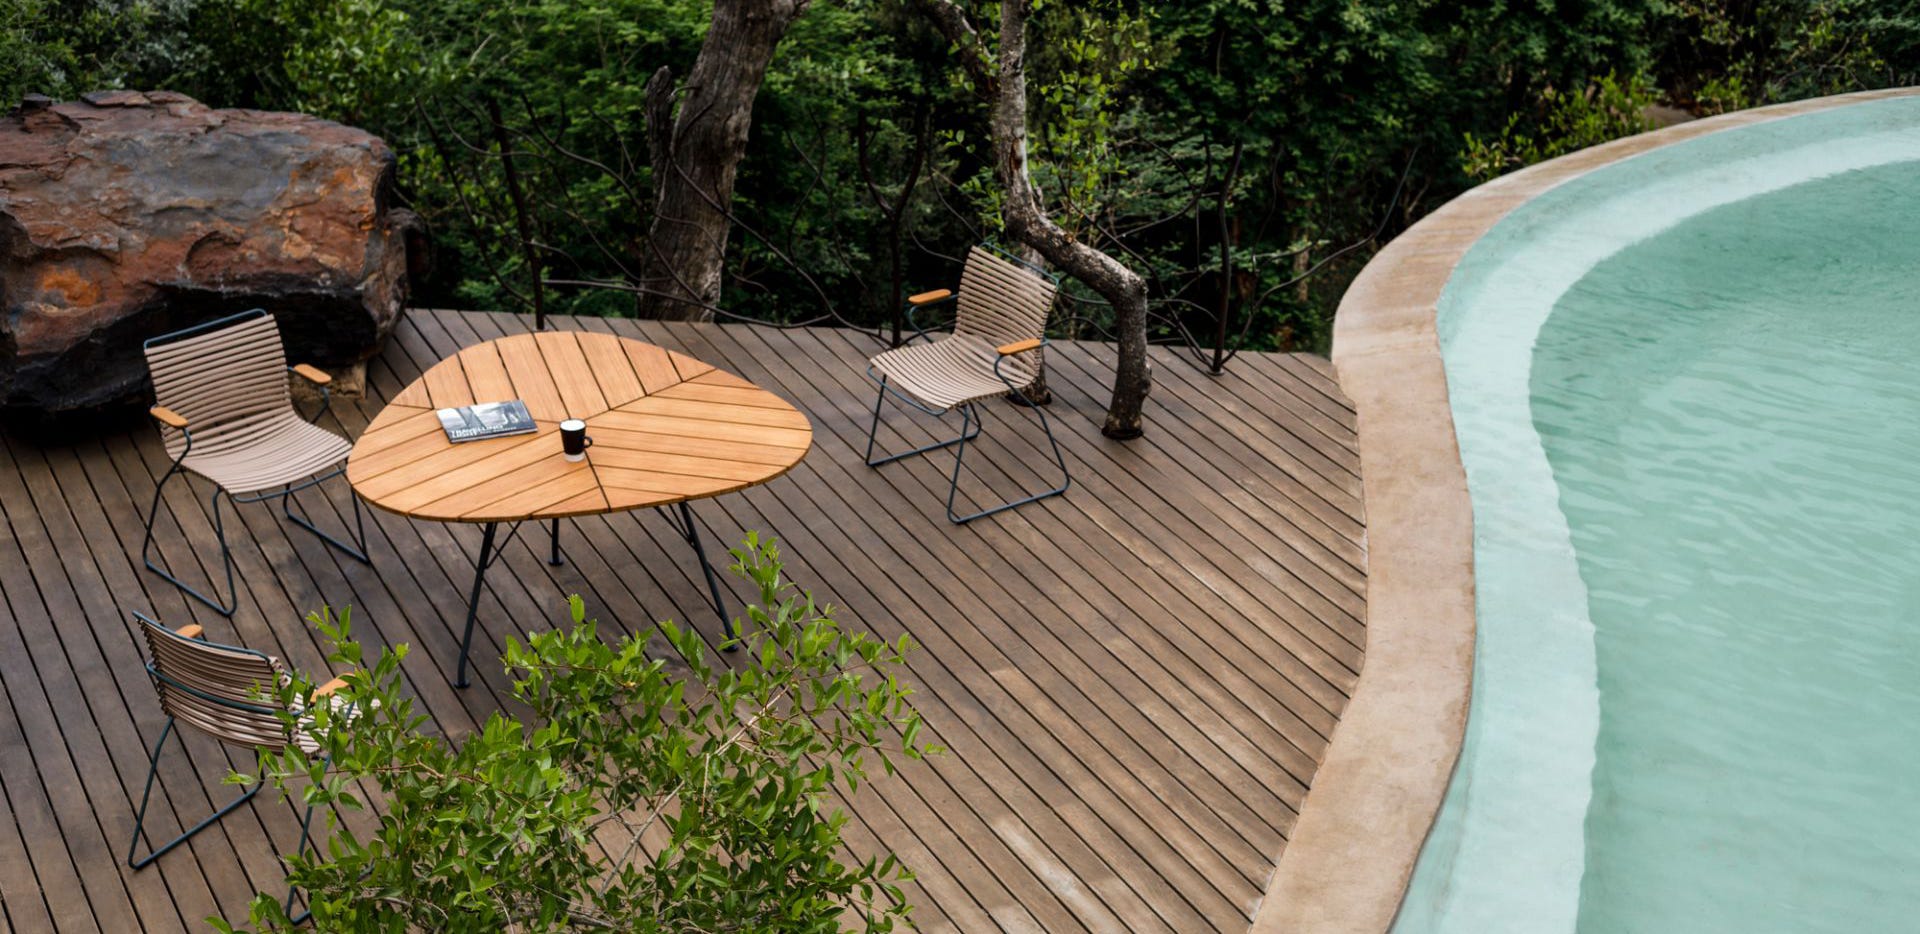 LEAF table outdoor furniture  design Henrik Pedersen